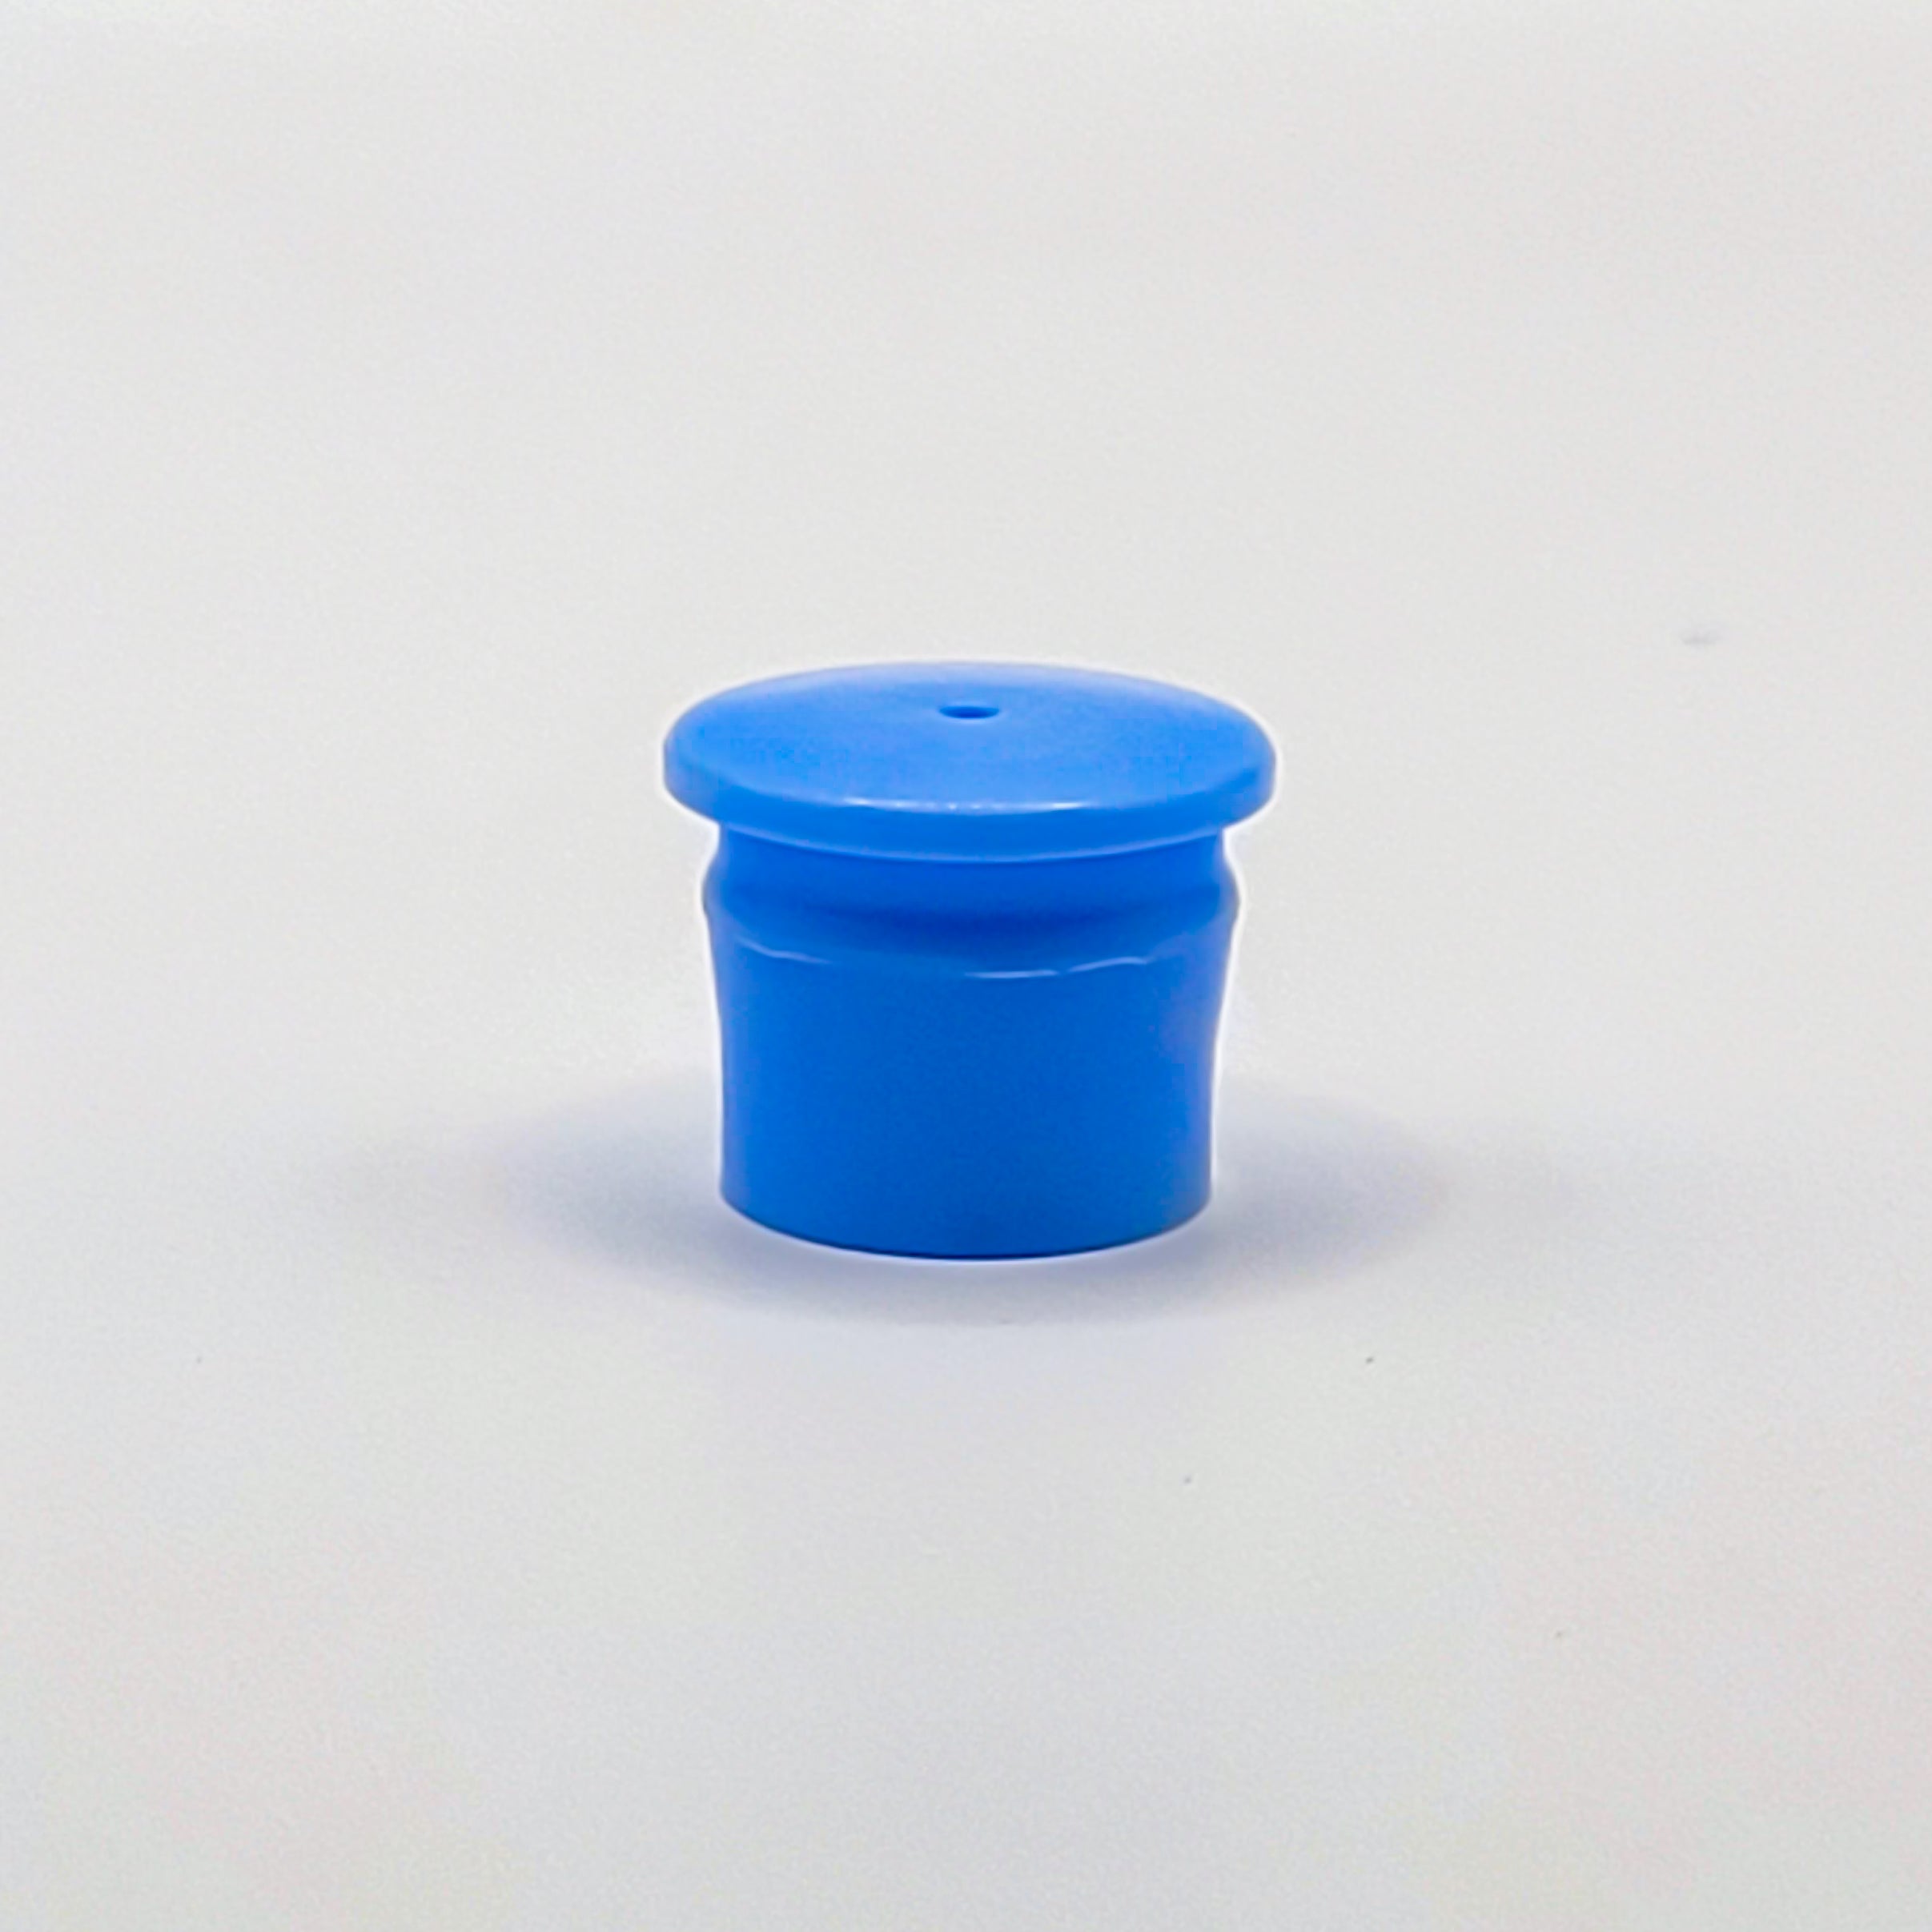 Unguator Varionozzle - 1mm (Blue)